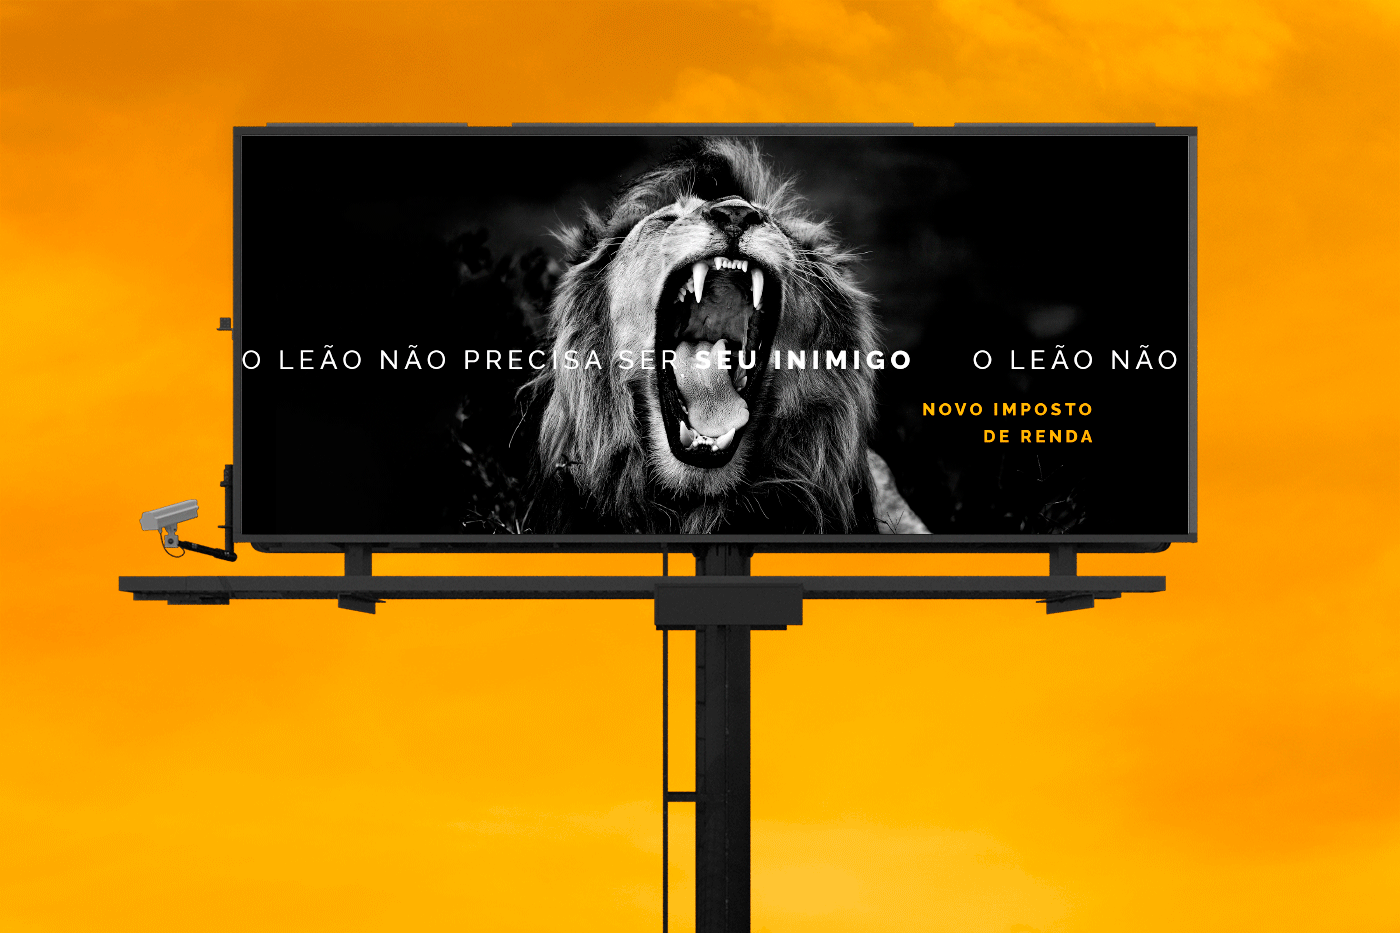 Imagem um um outdoor com um leão rugindo e o texto: “O leão não precisa ser seu inimigo, novo imposto de renda”.